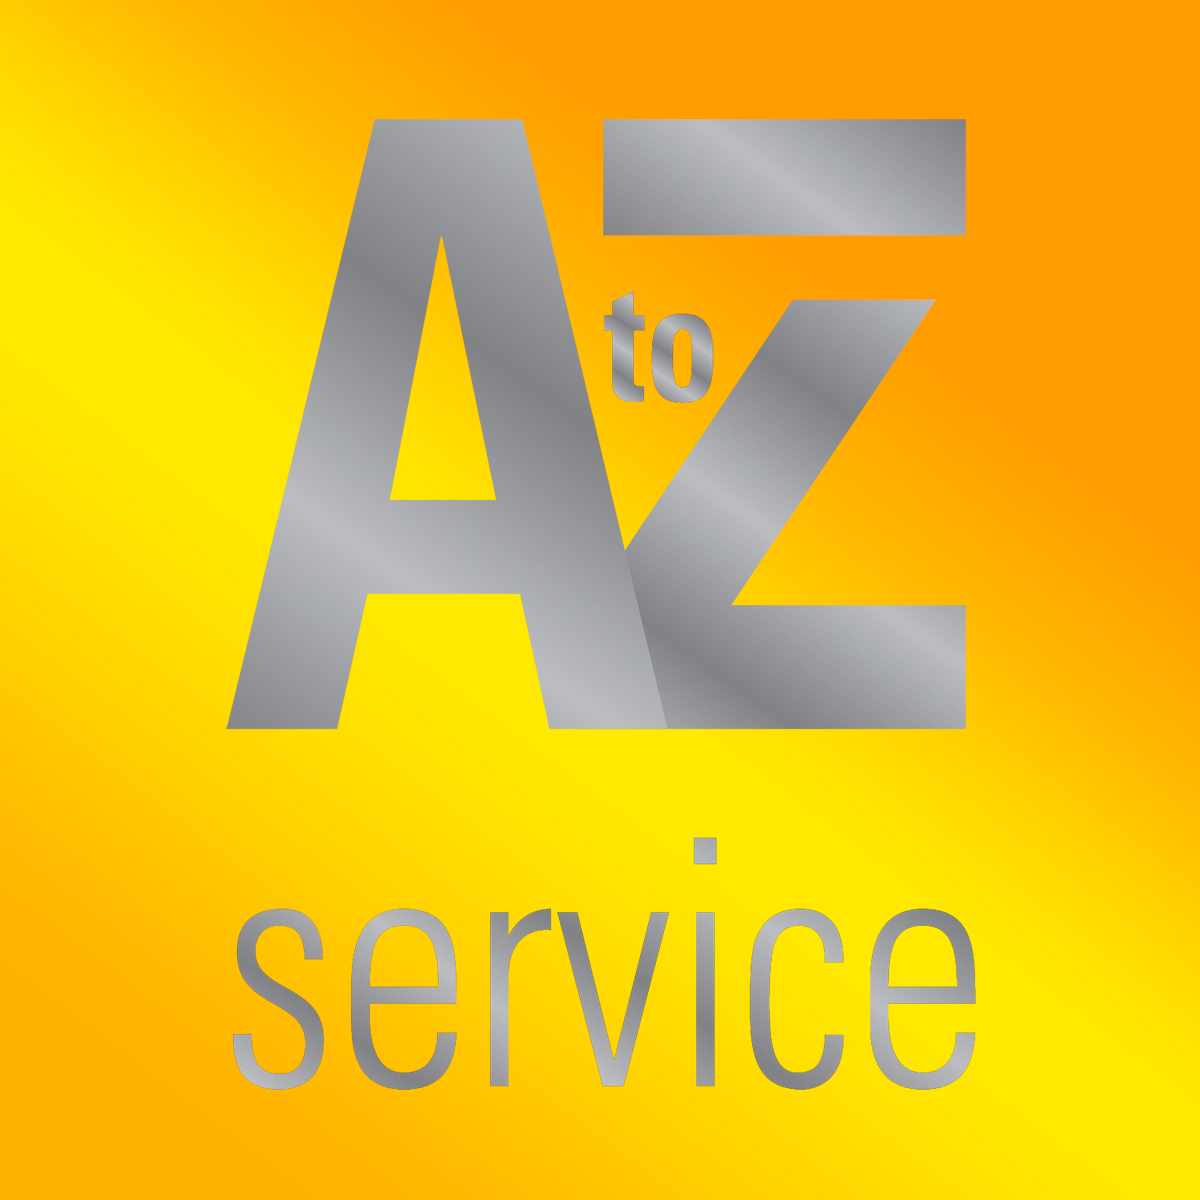 A to Z Service - Zimmer MedizinSystems